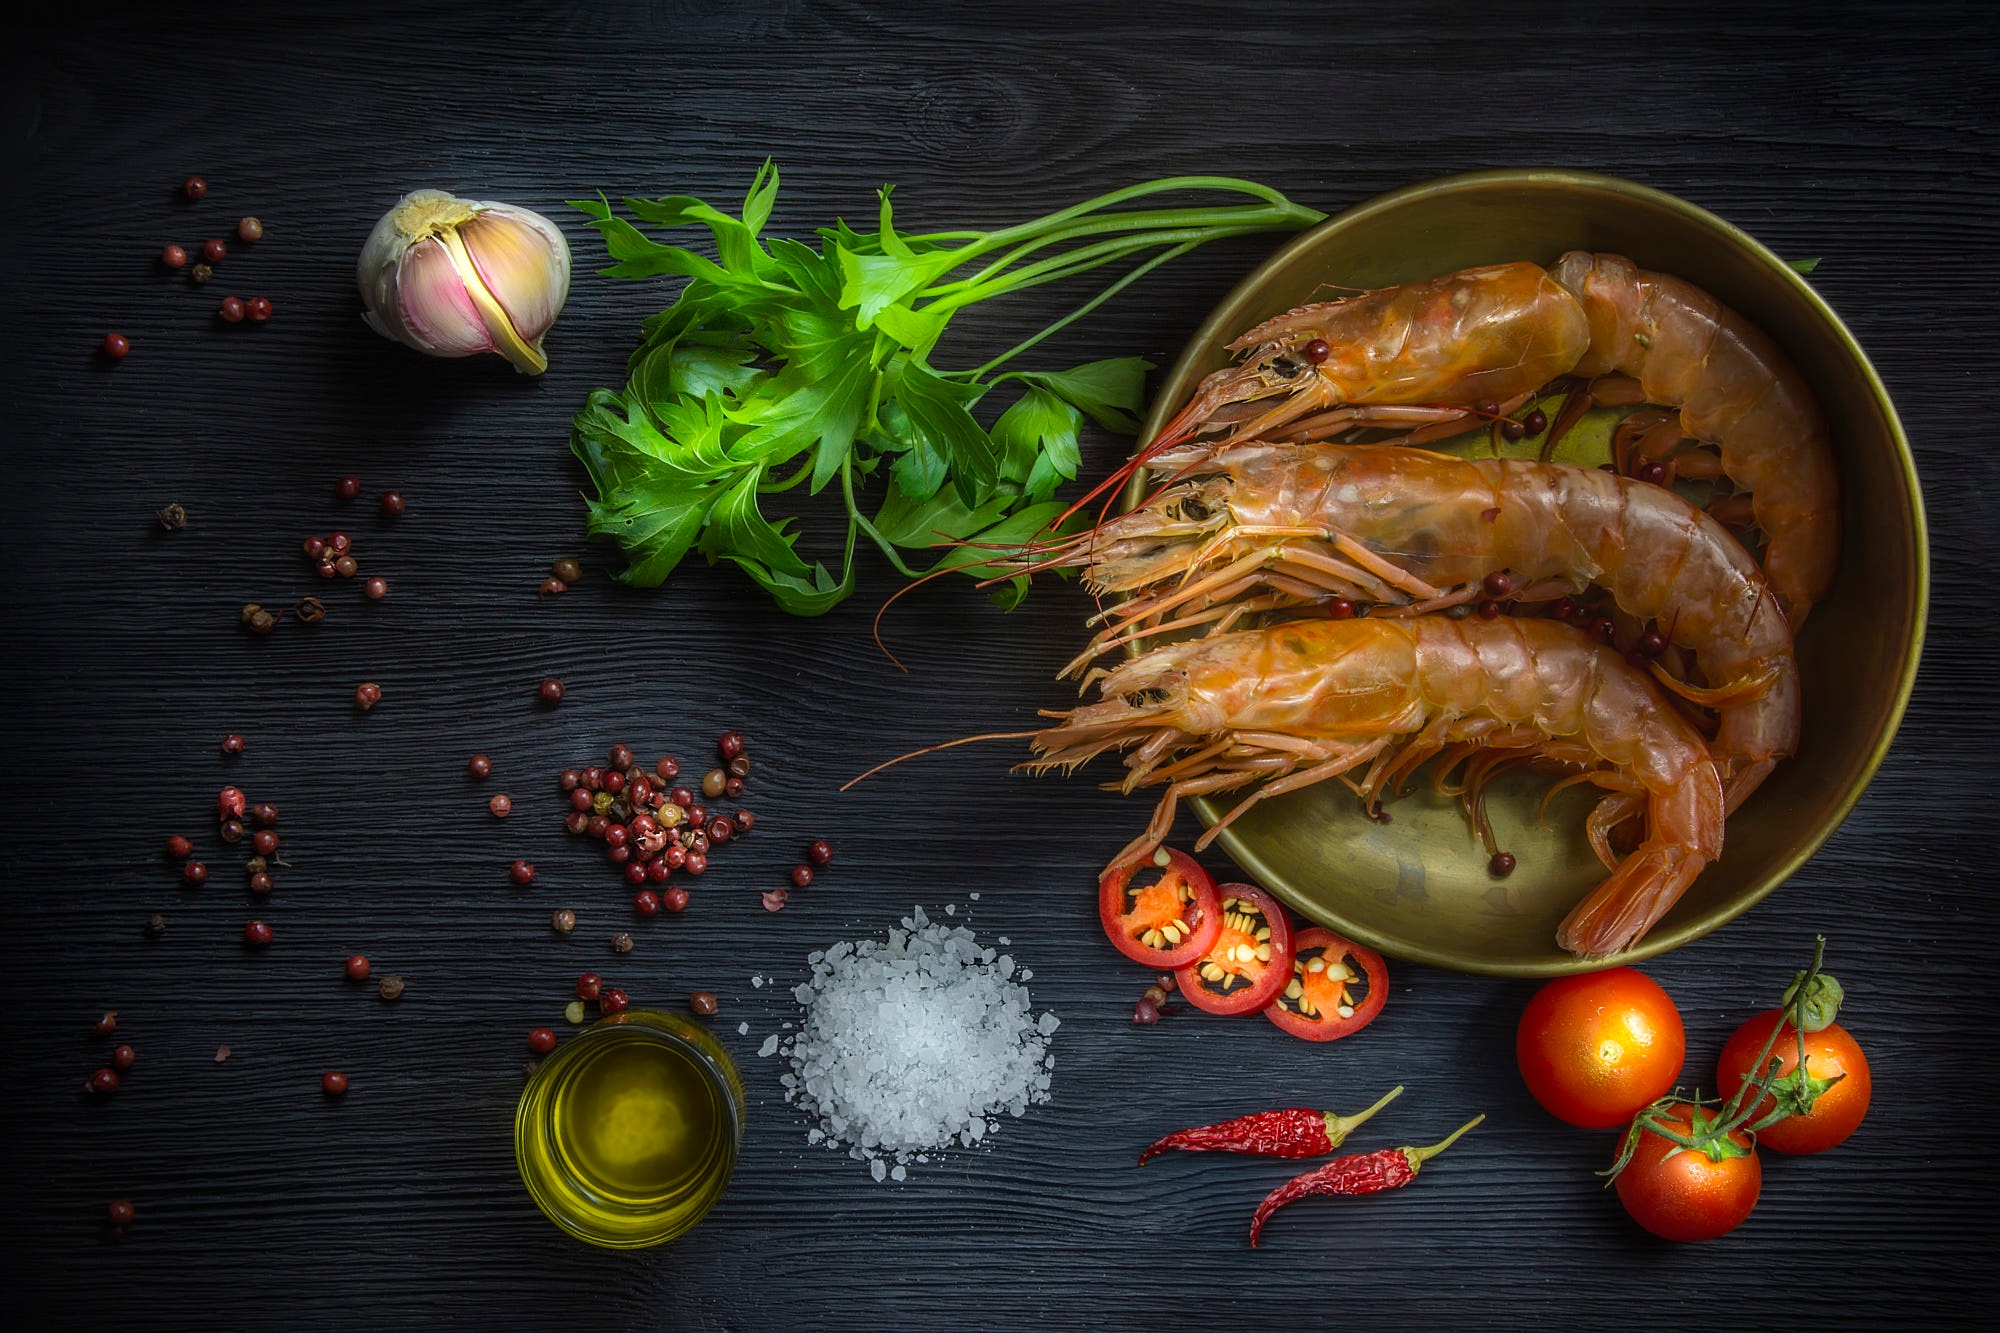 Free download wallpaper Food, Shrimp, Seafood on your PC desktop